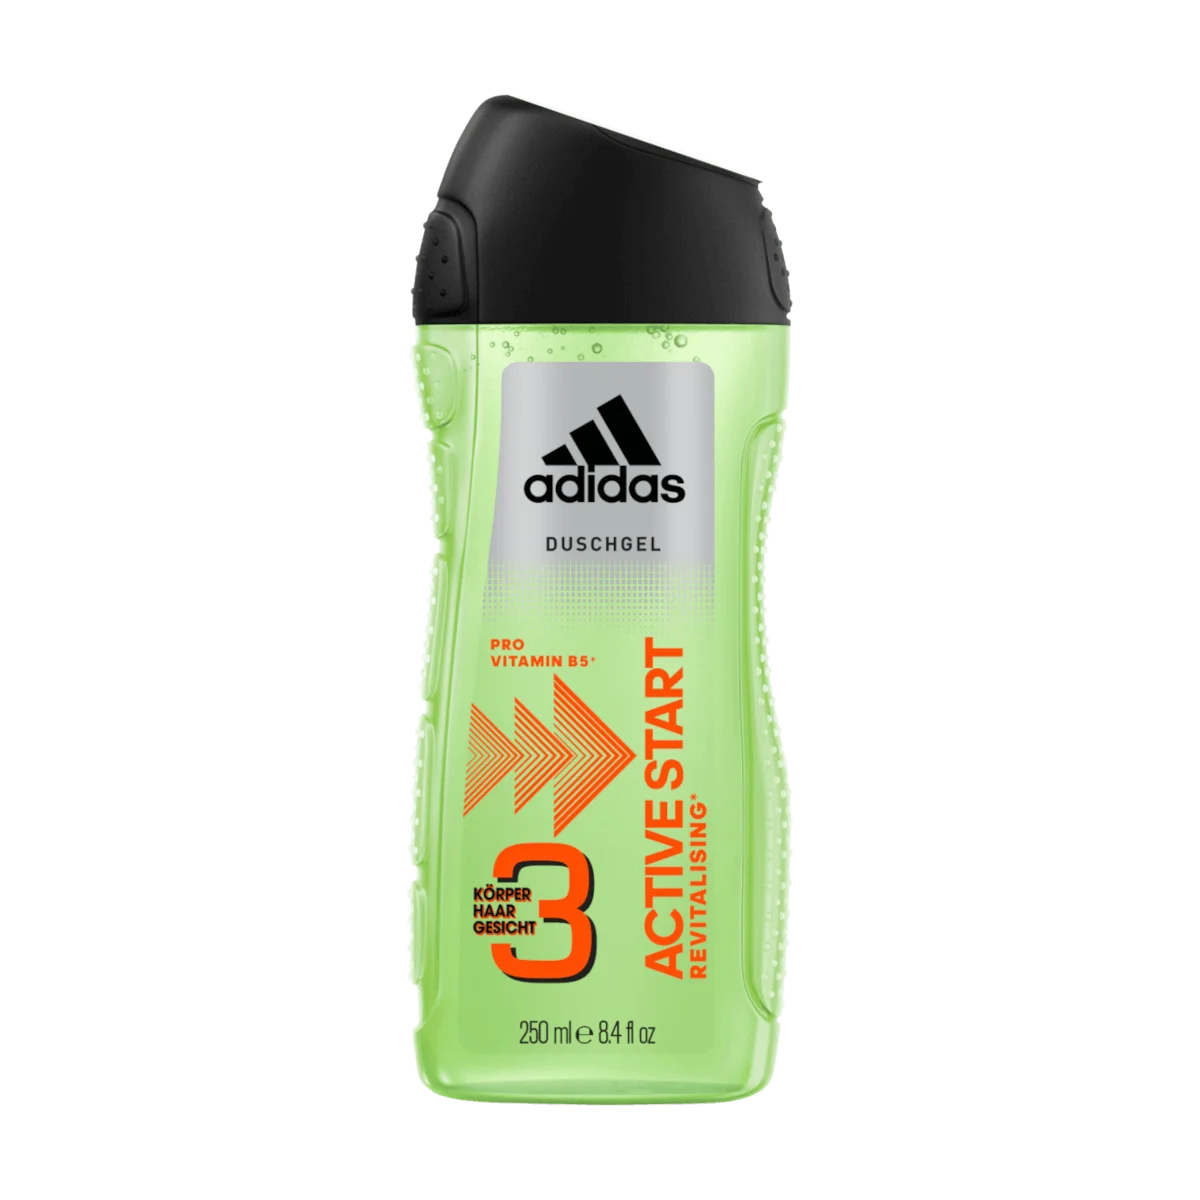 Adidas Active Start Duschgel, 250 ml